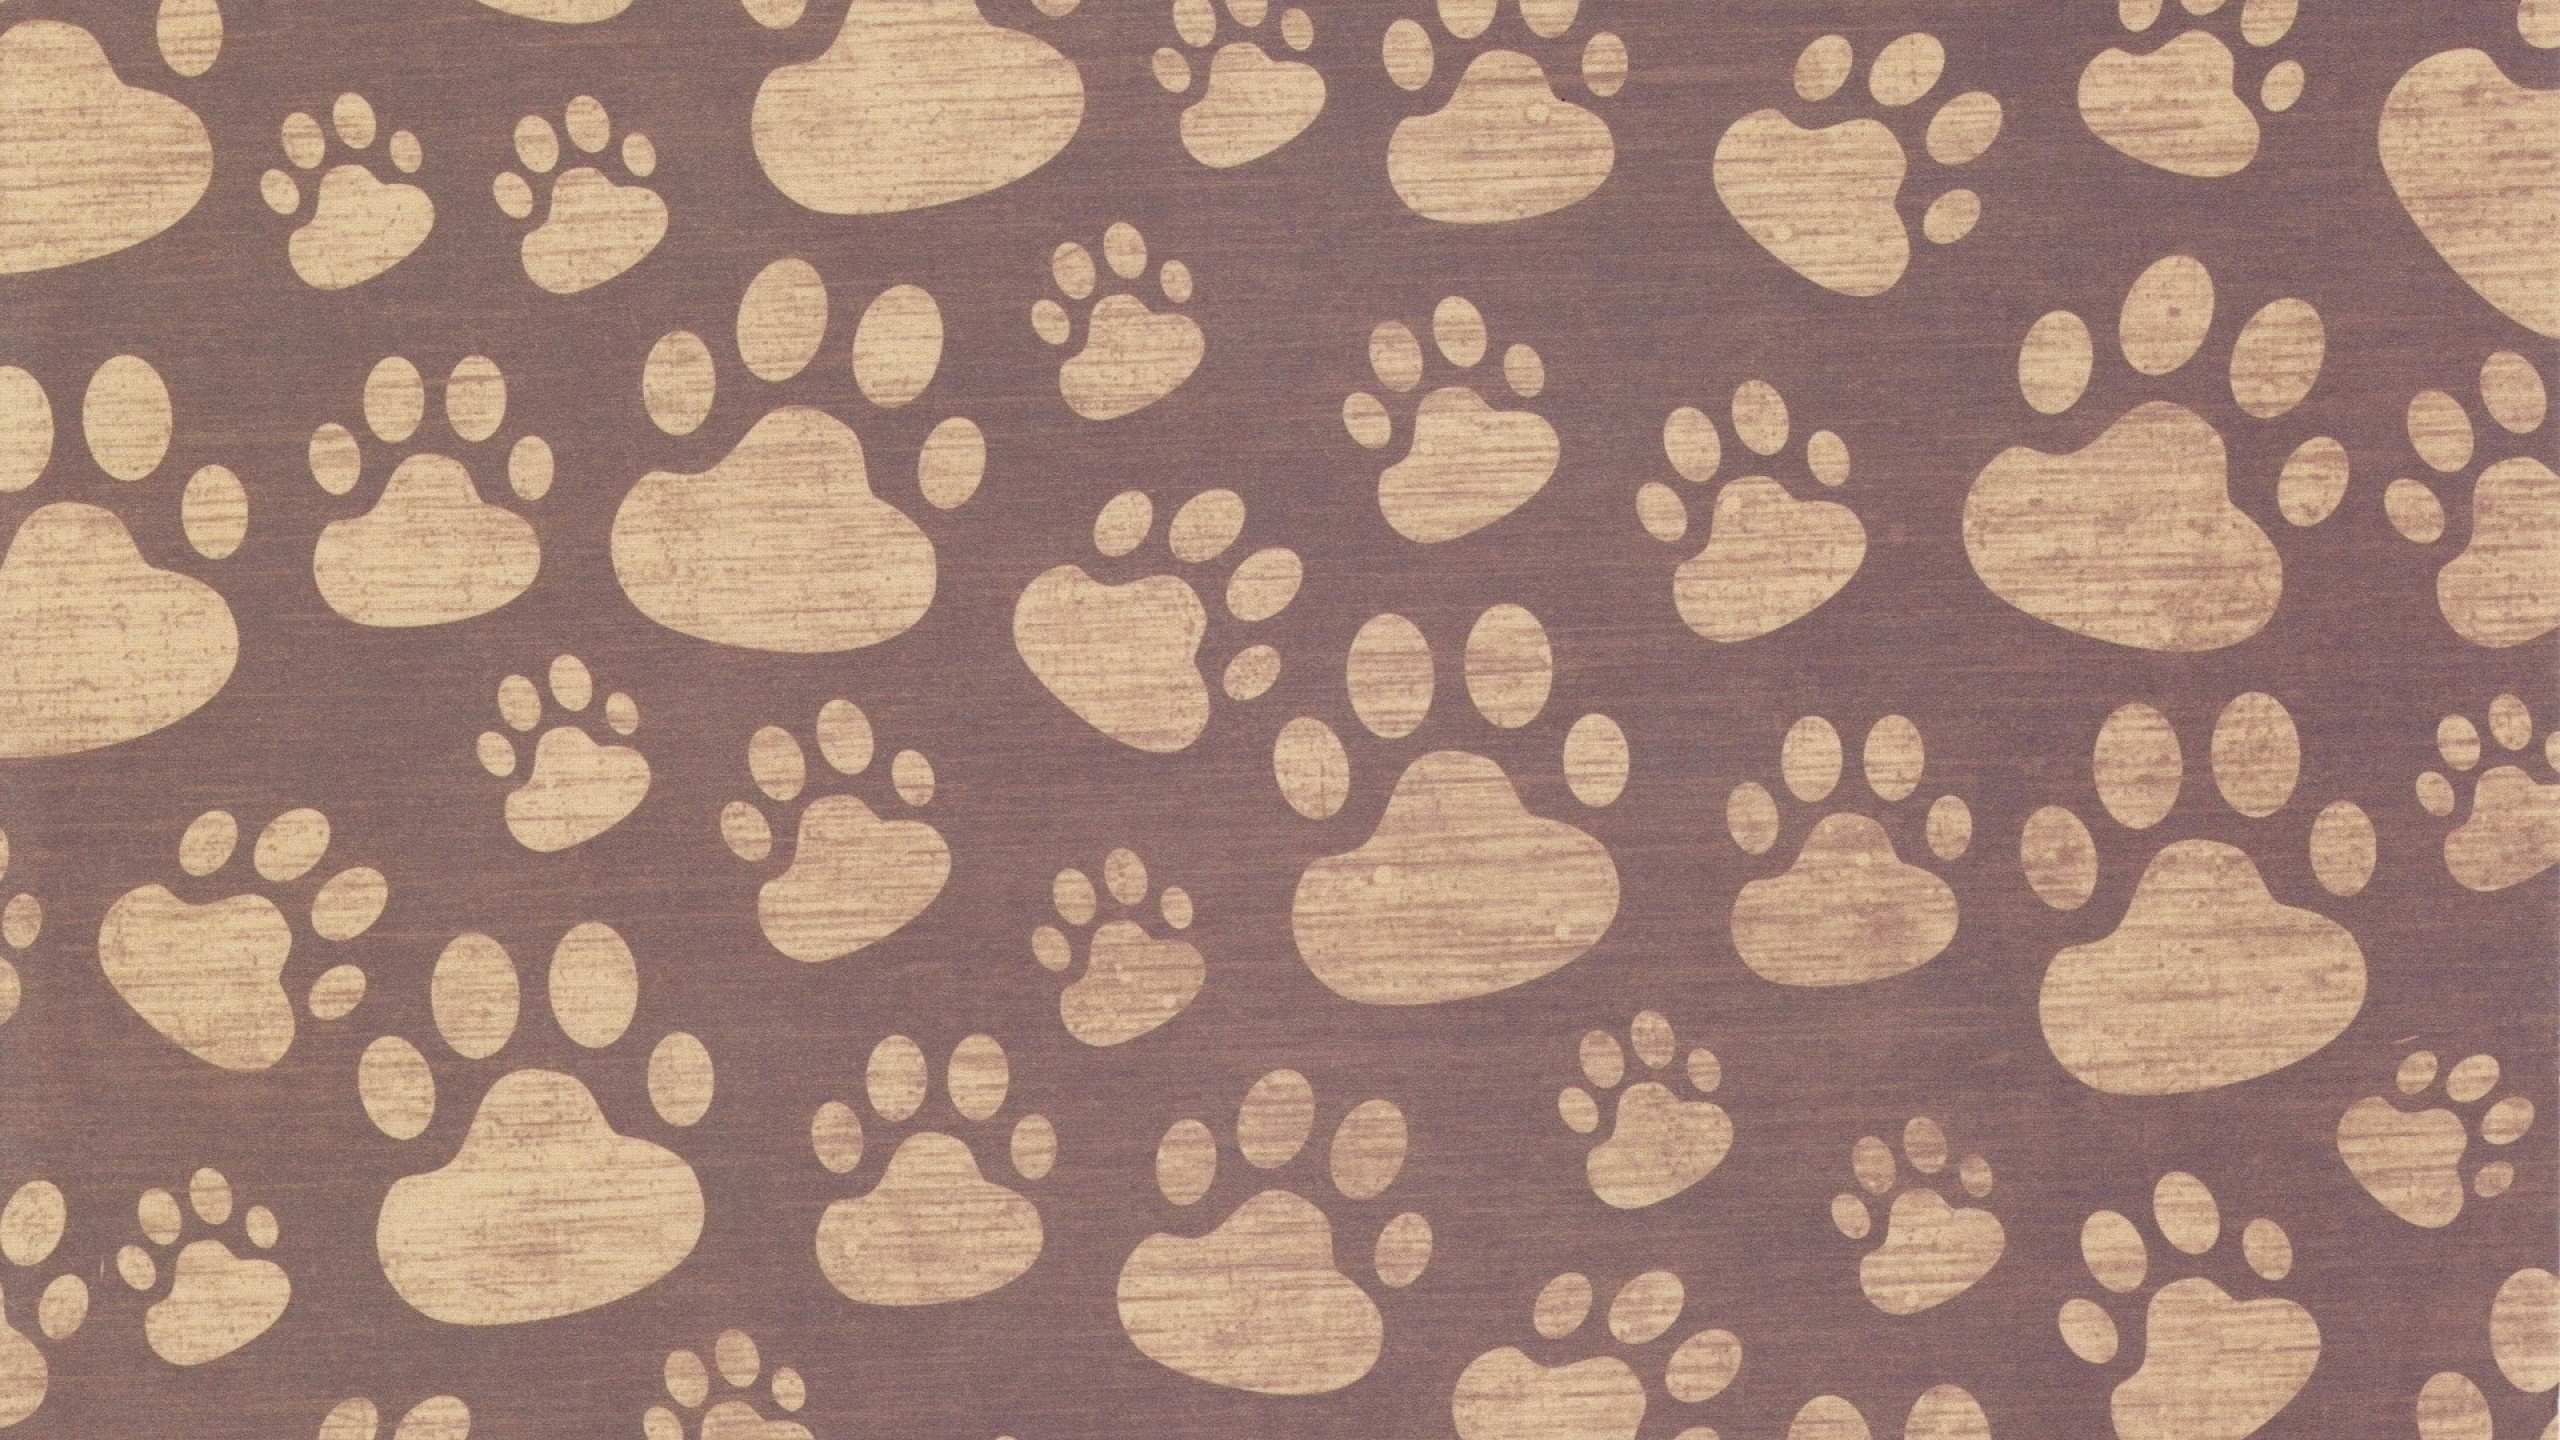 爪子, 棕色, 小狗, 视觉艺术, 黄金猎犬 壁纸 2560x1440 允许